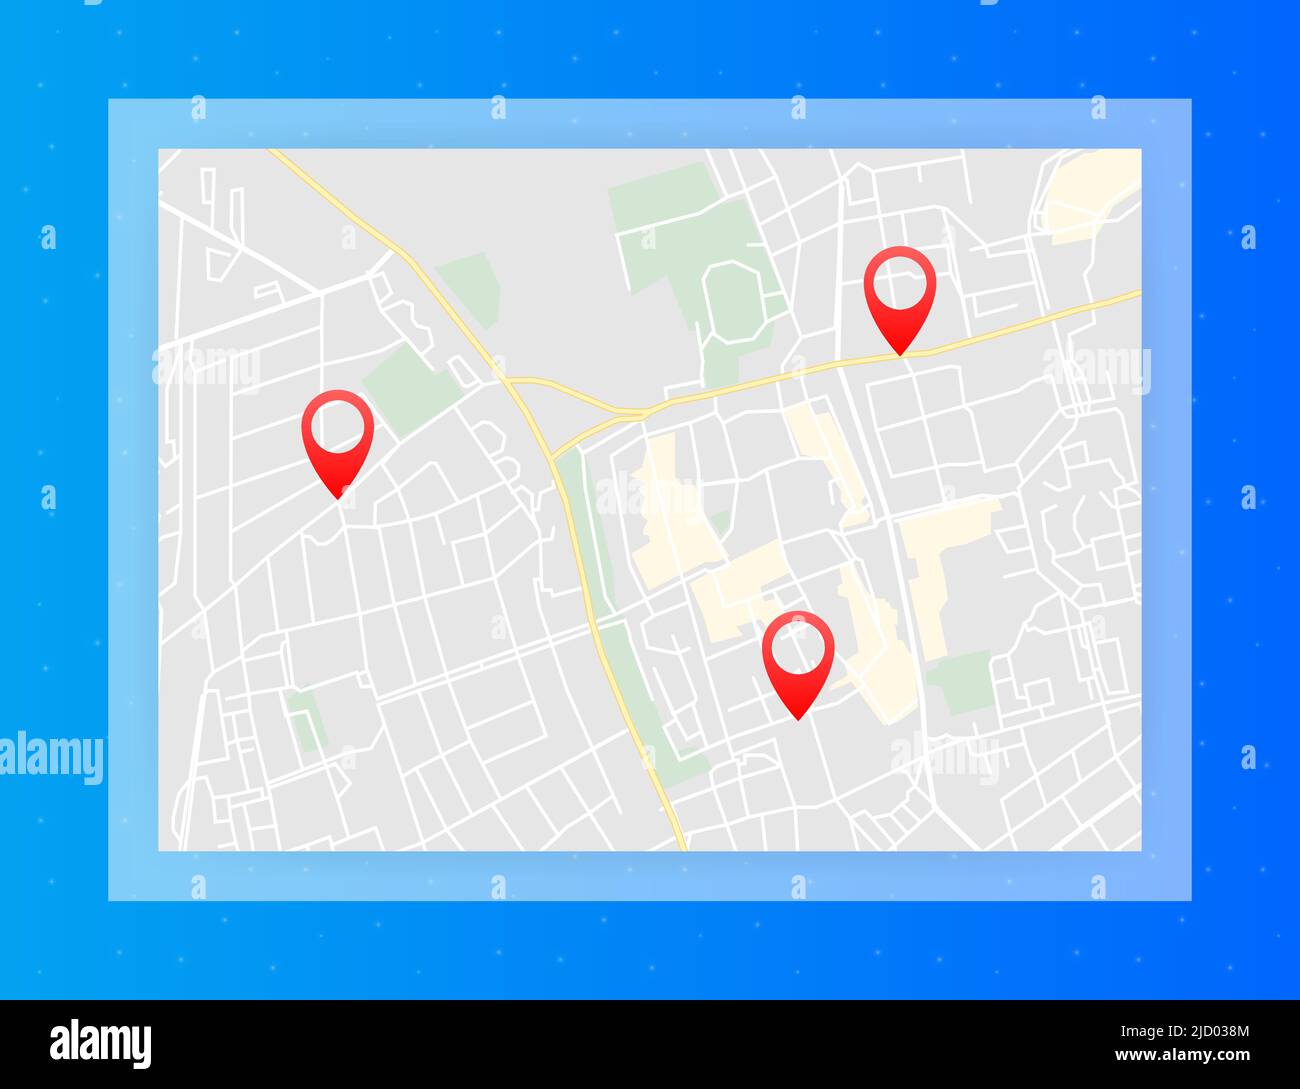 Stadtplan mit Pins. GPS-Navigationsroute mit Zeigern. Stadtstraßen und Wohnblocks. Stock Vektor